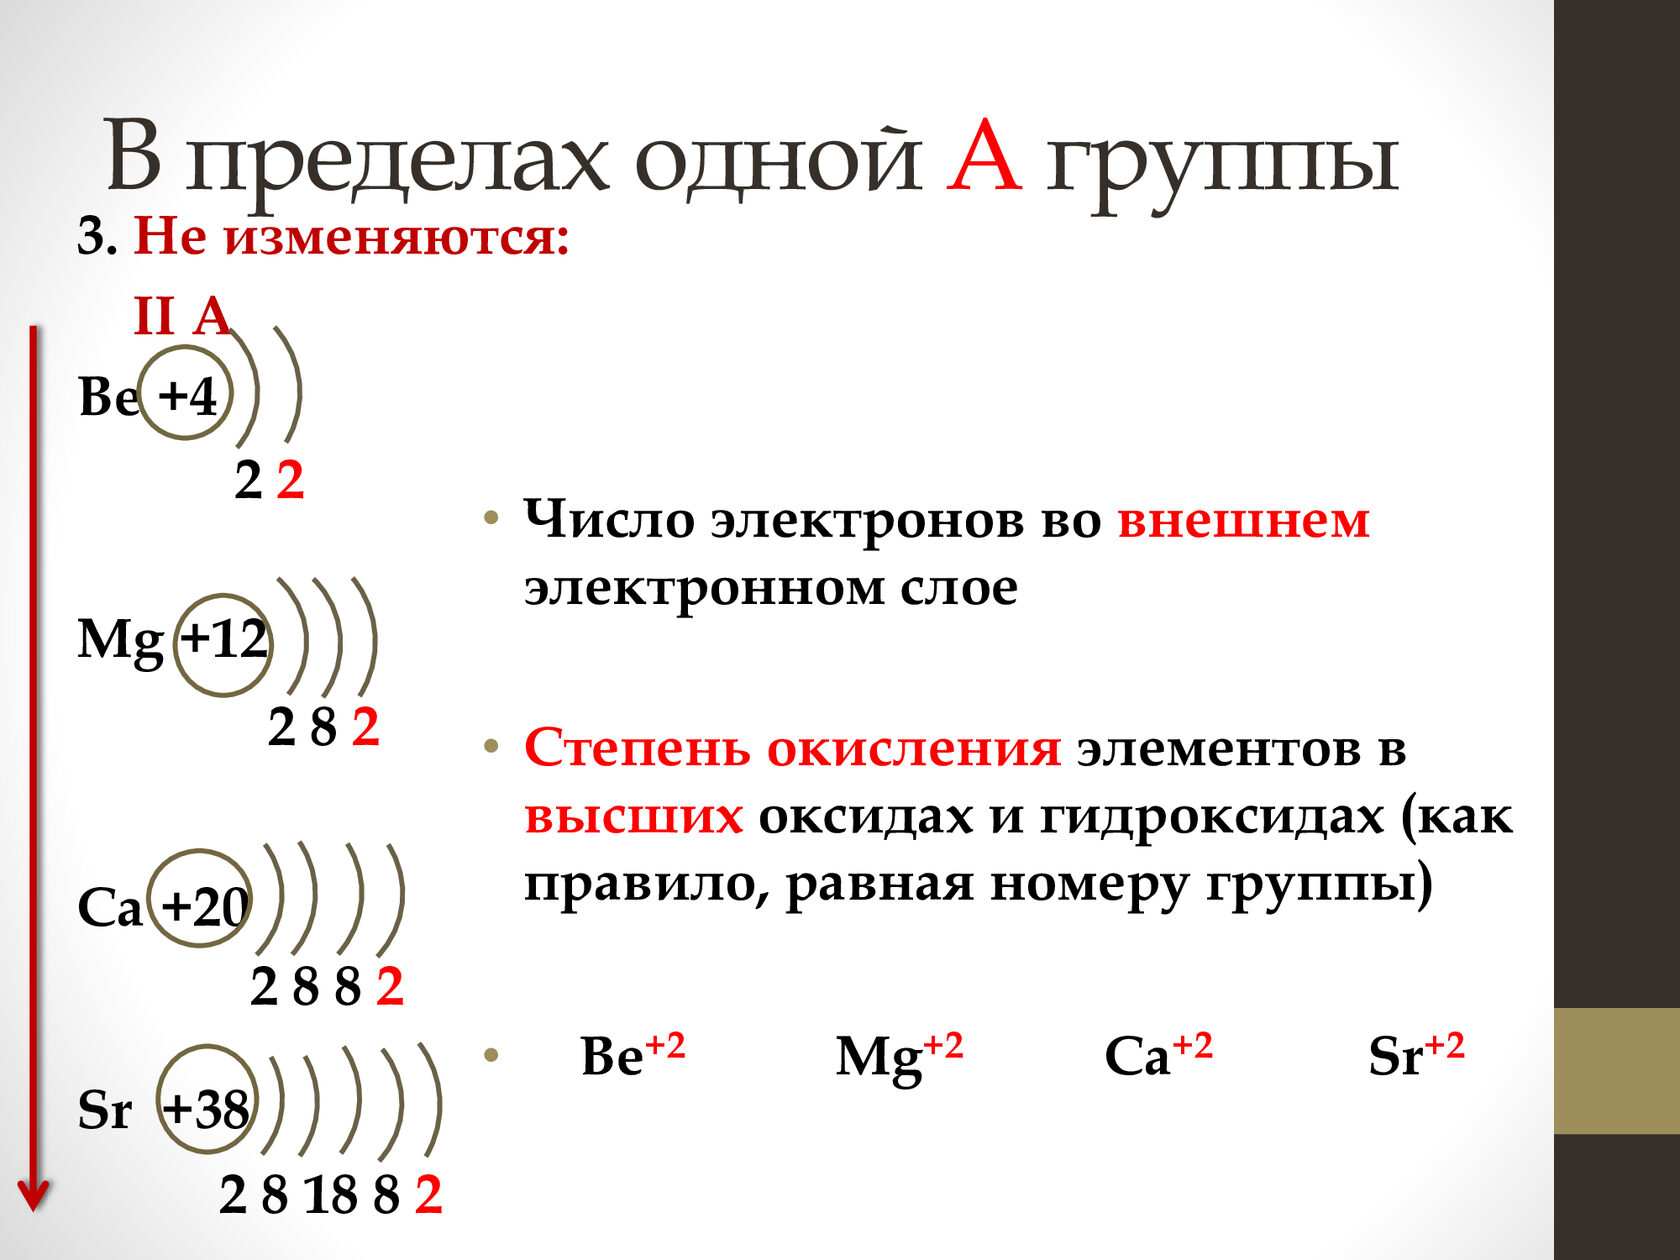 Строение атома индия (in), схема и примеры